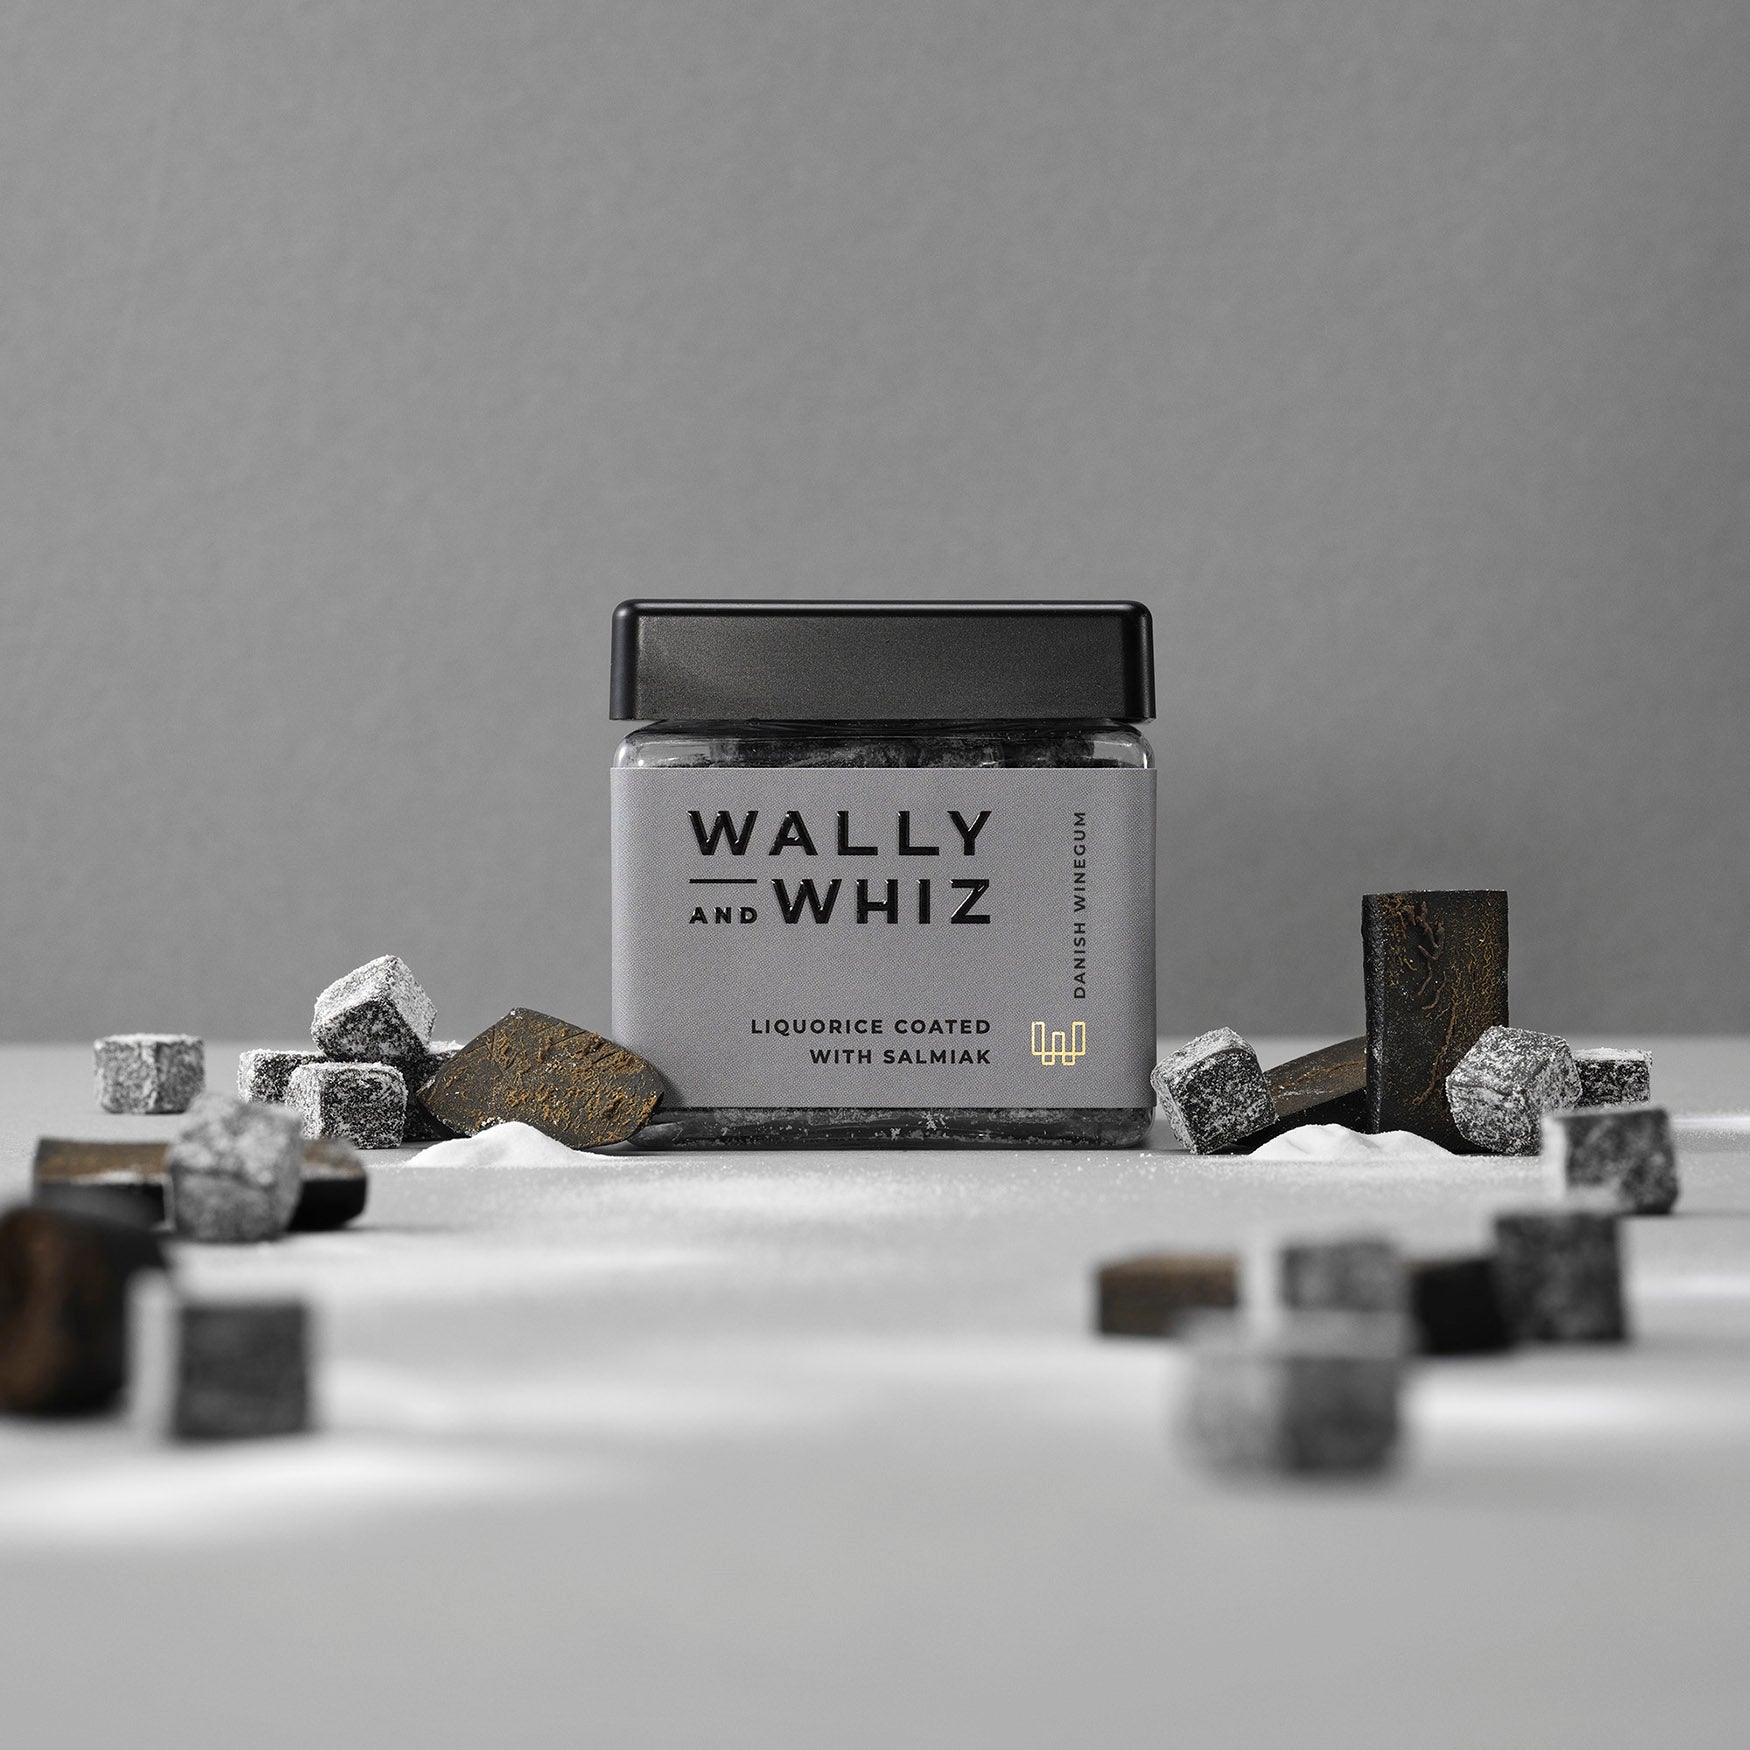 Wally e Whiz Wine Gum Cube, Liqorice con Salmiak, 140G